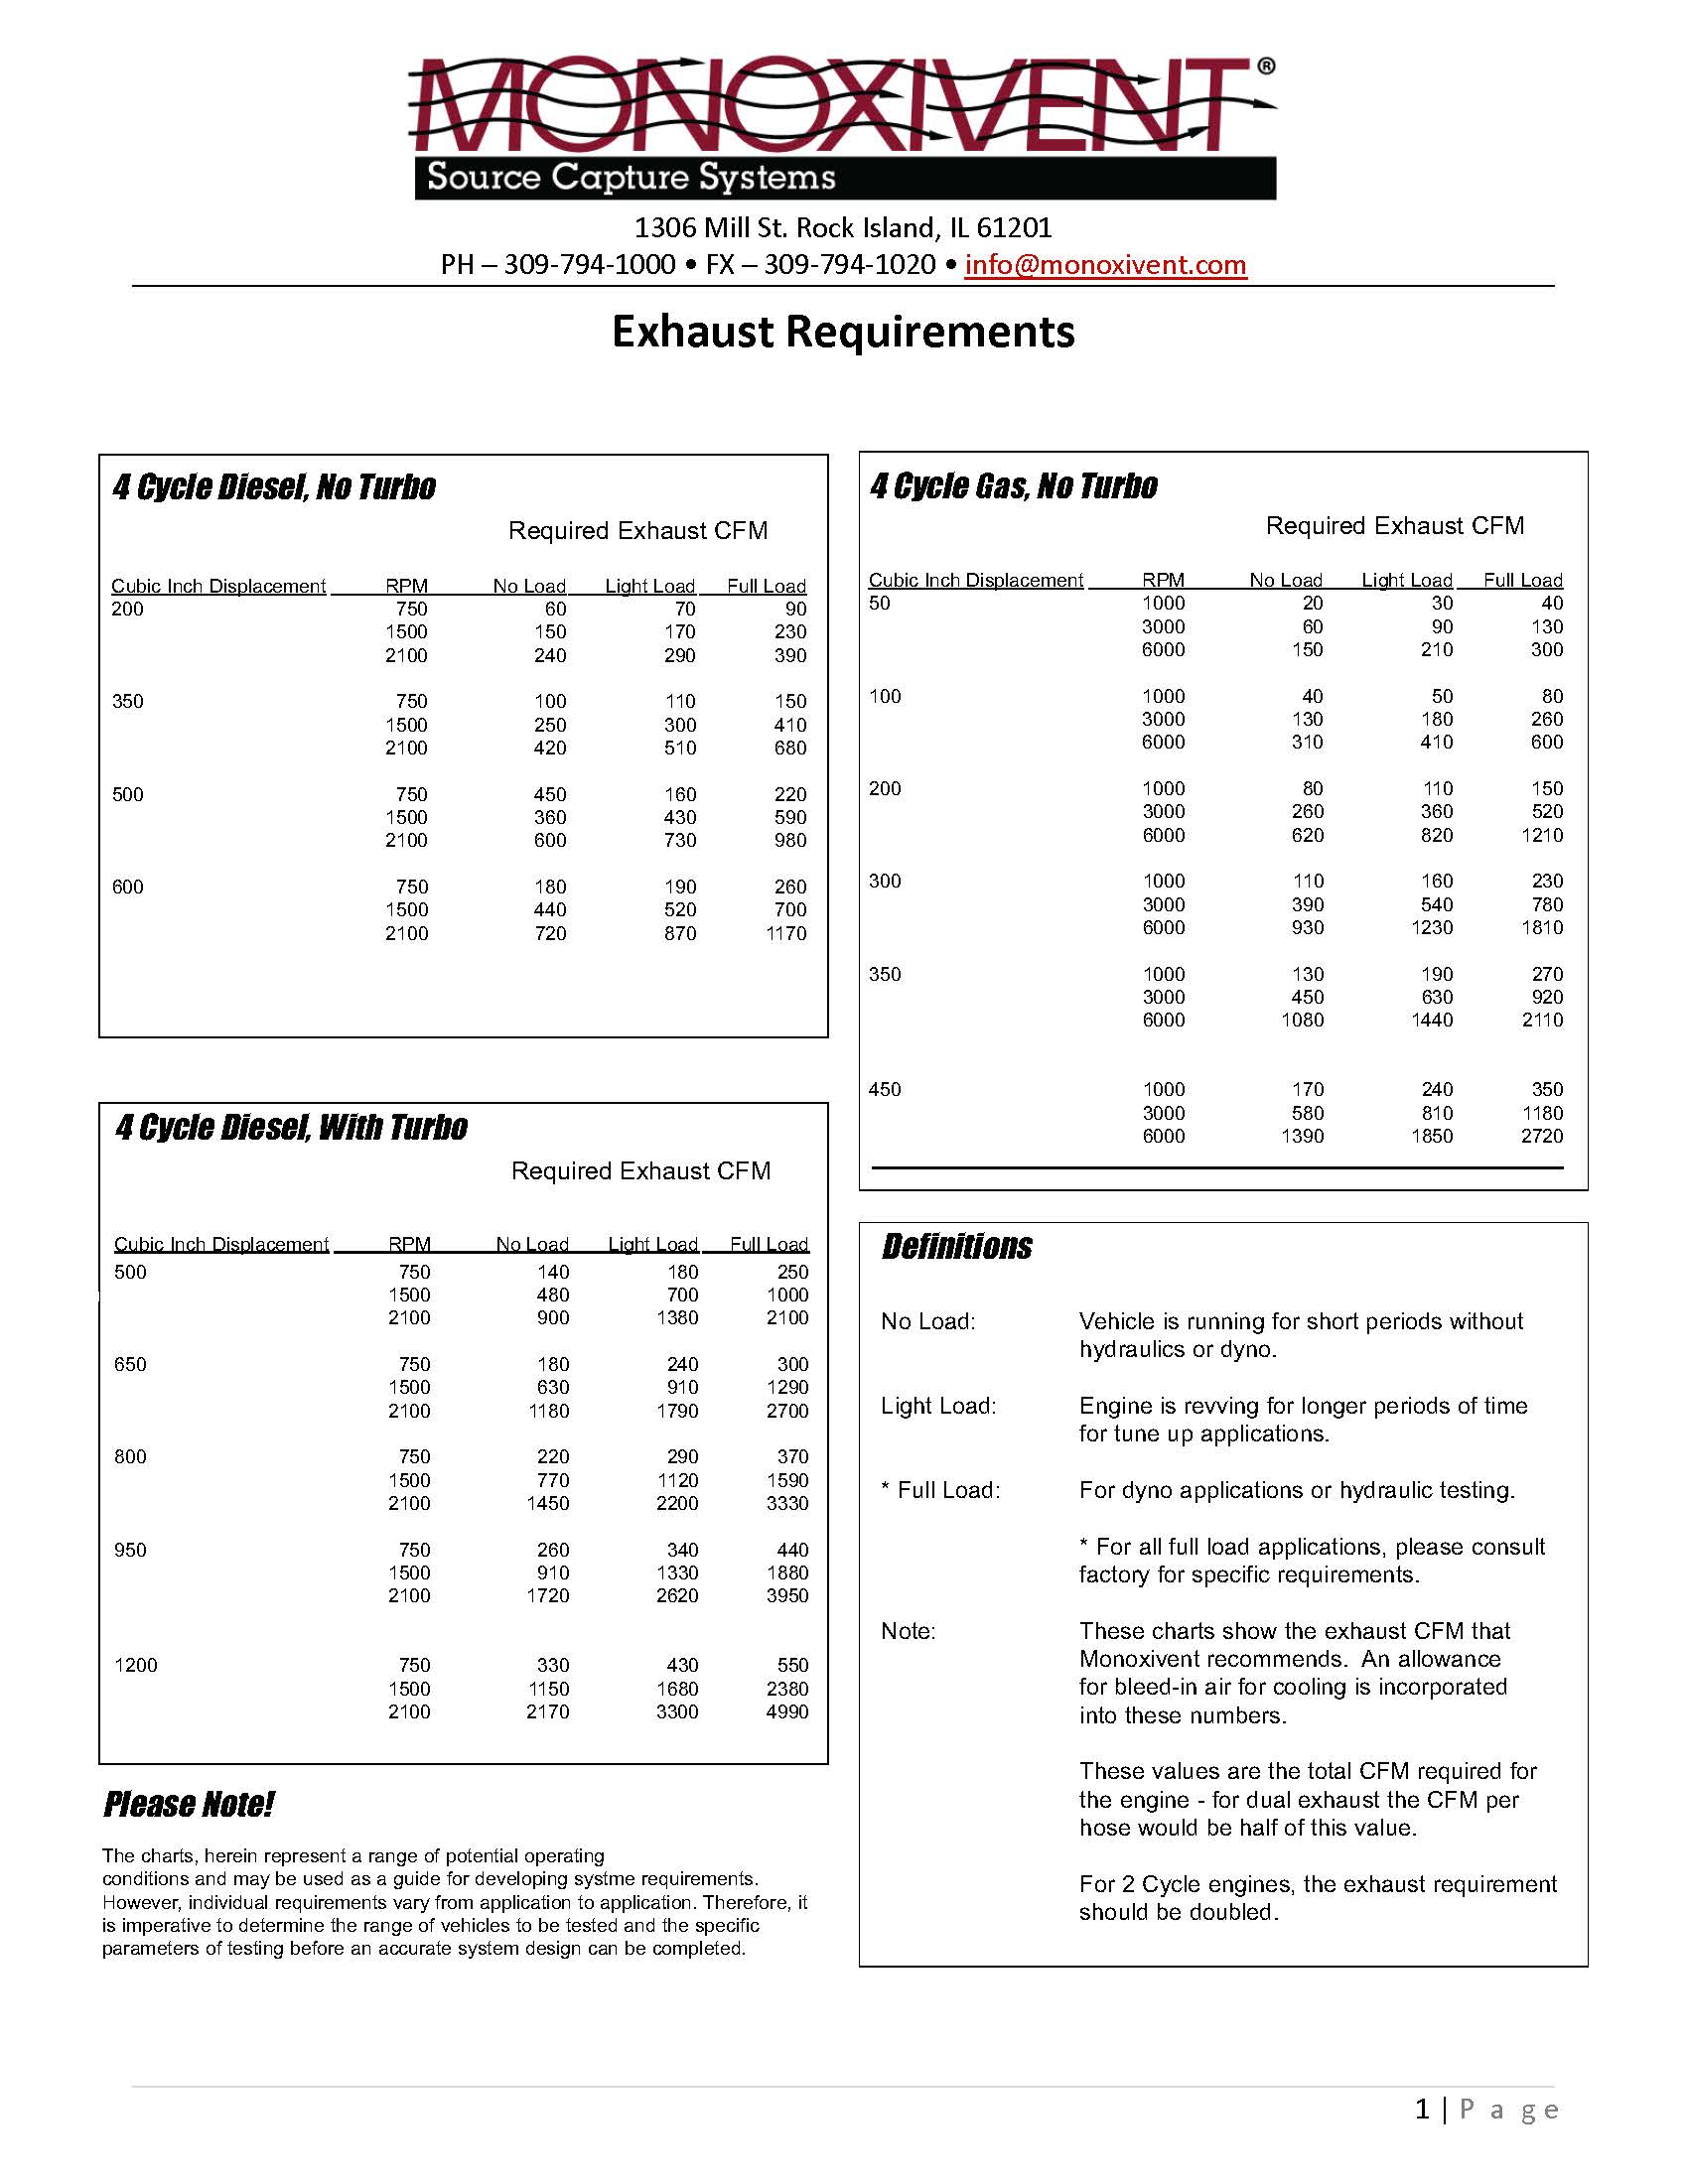 Exhaust Requirements